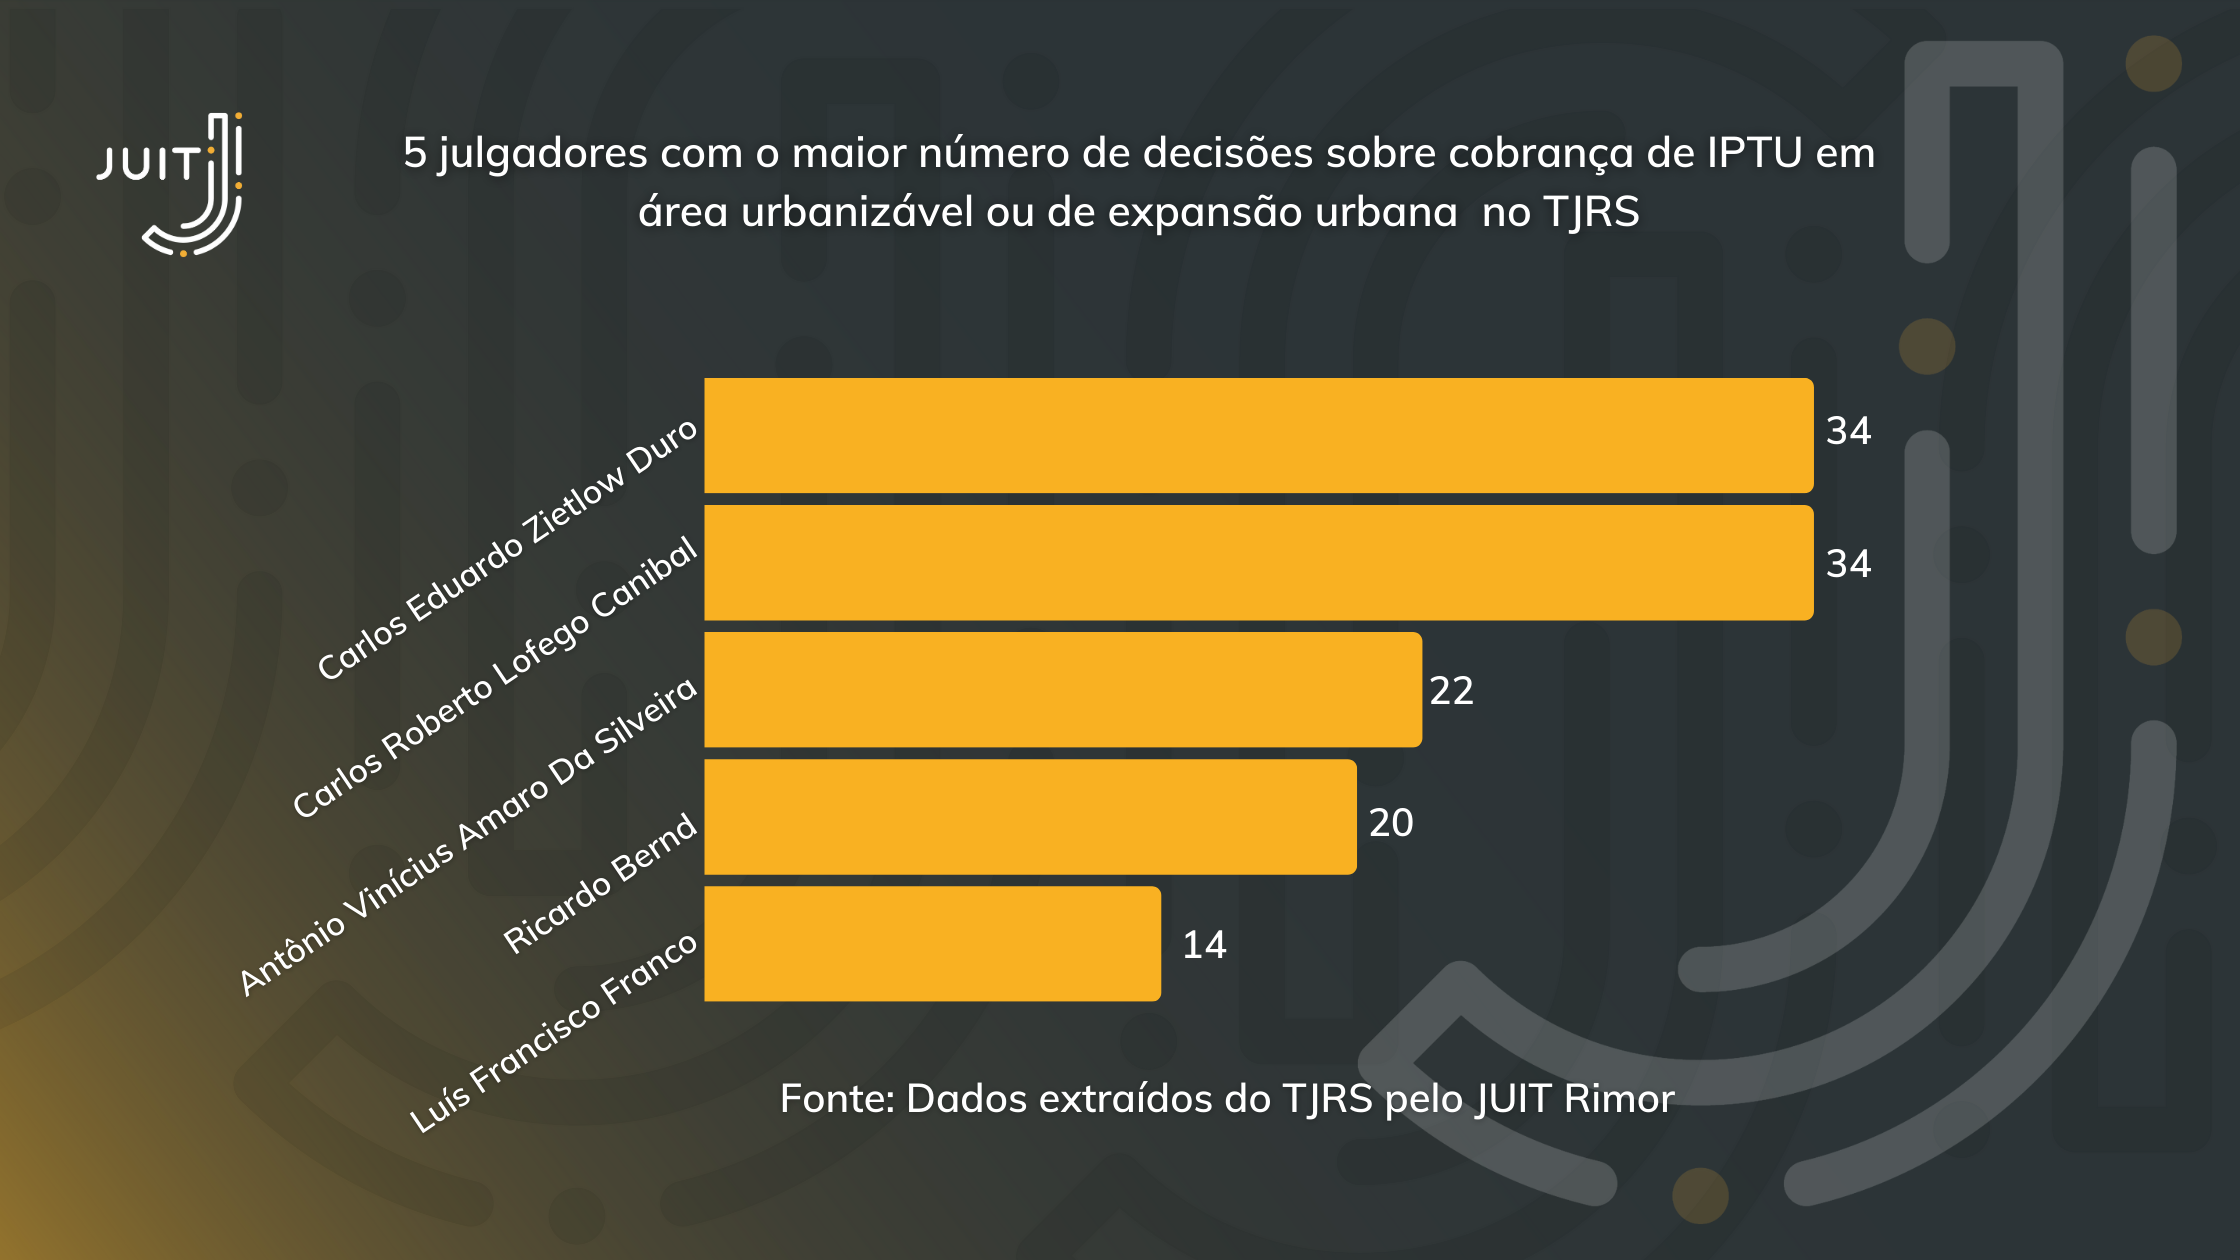 Julgadores com a maior quantidade de decisões sobre cobrança de IPTU em área urbanizável e de expansão urbana no TJRS